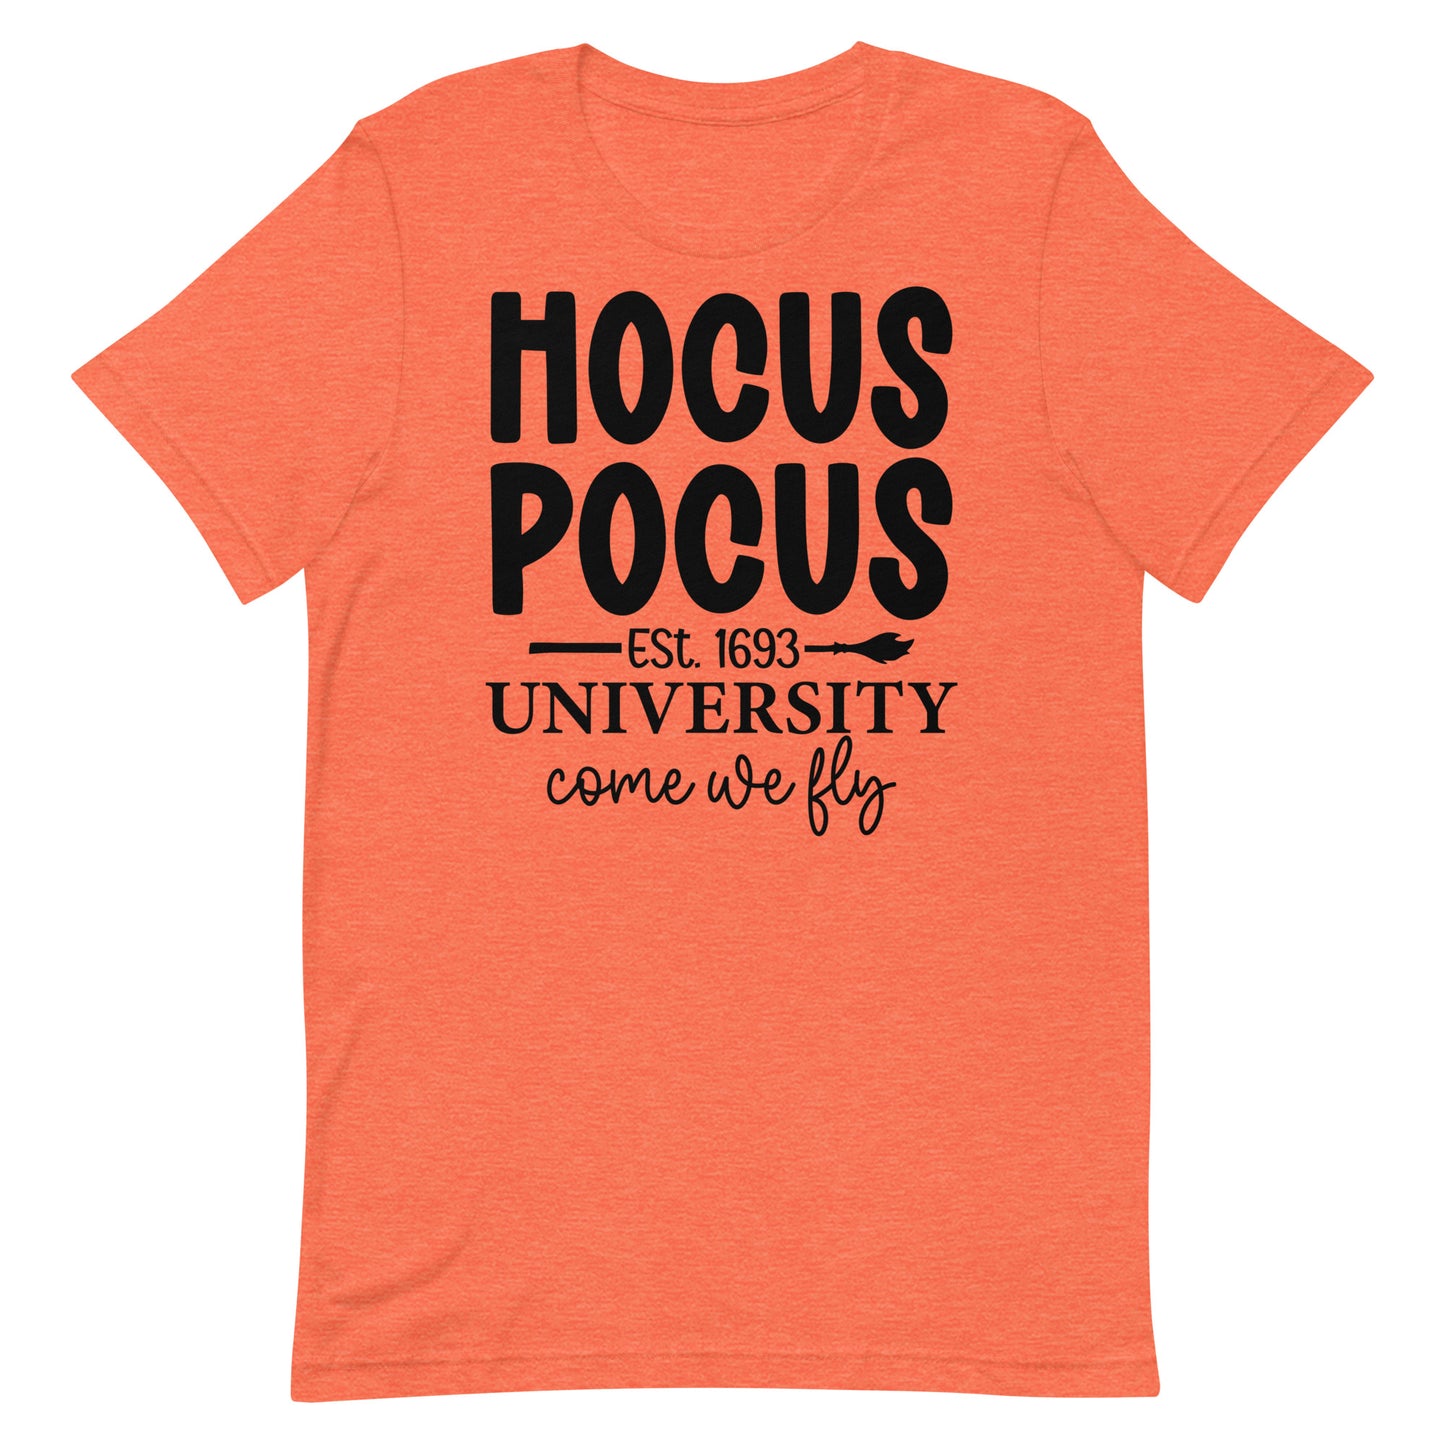 Hocus Pocus University- T-shirt